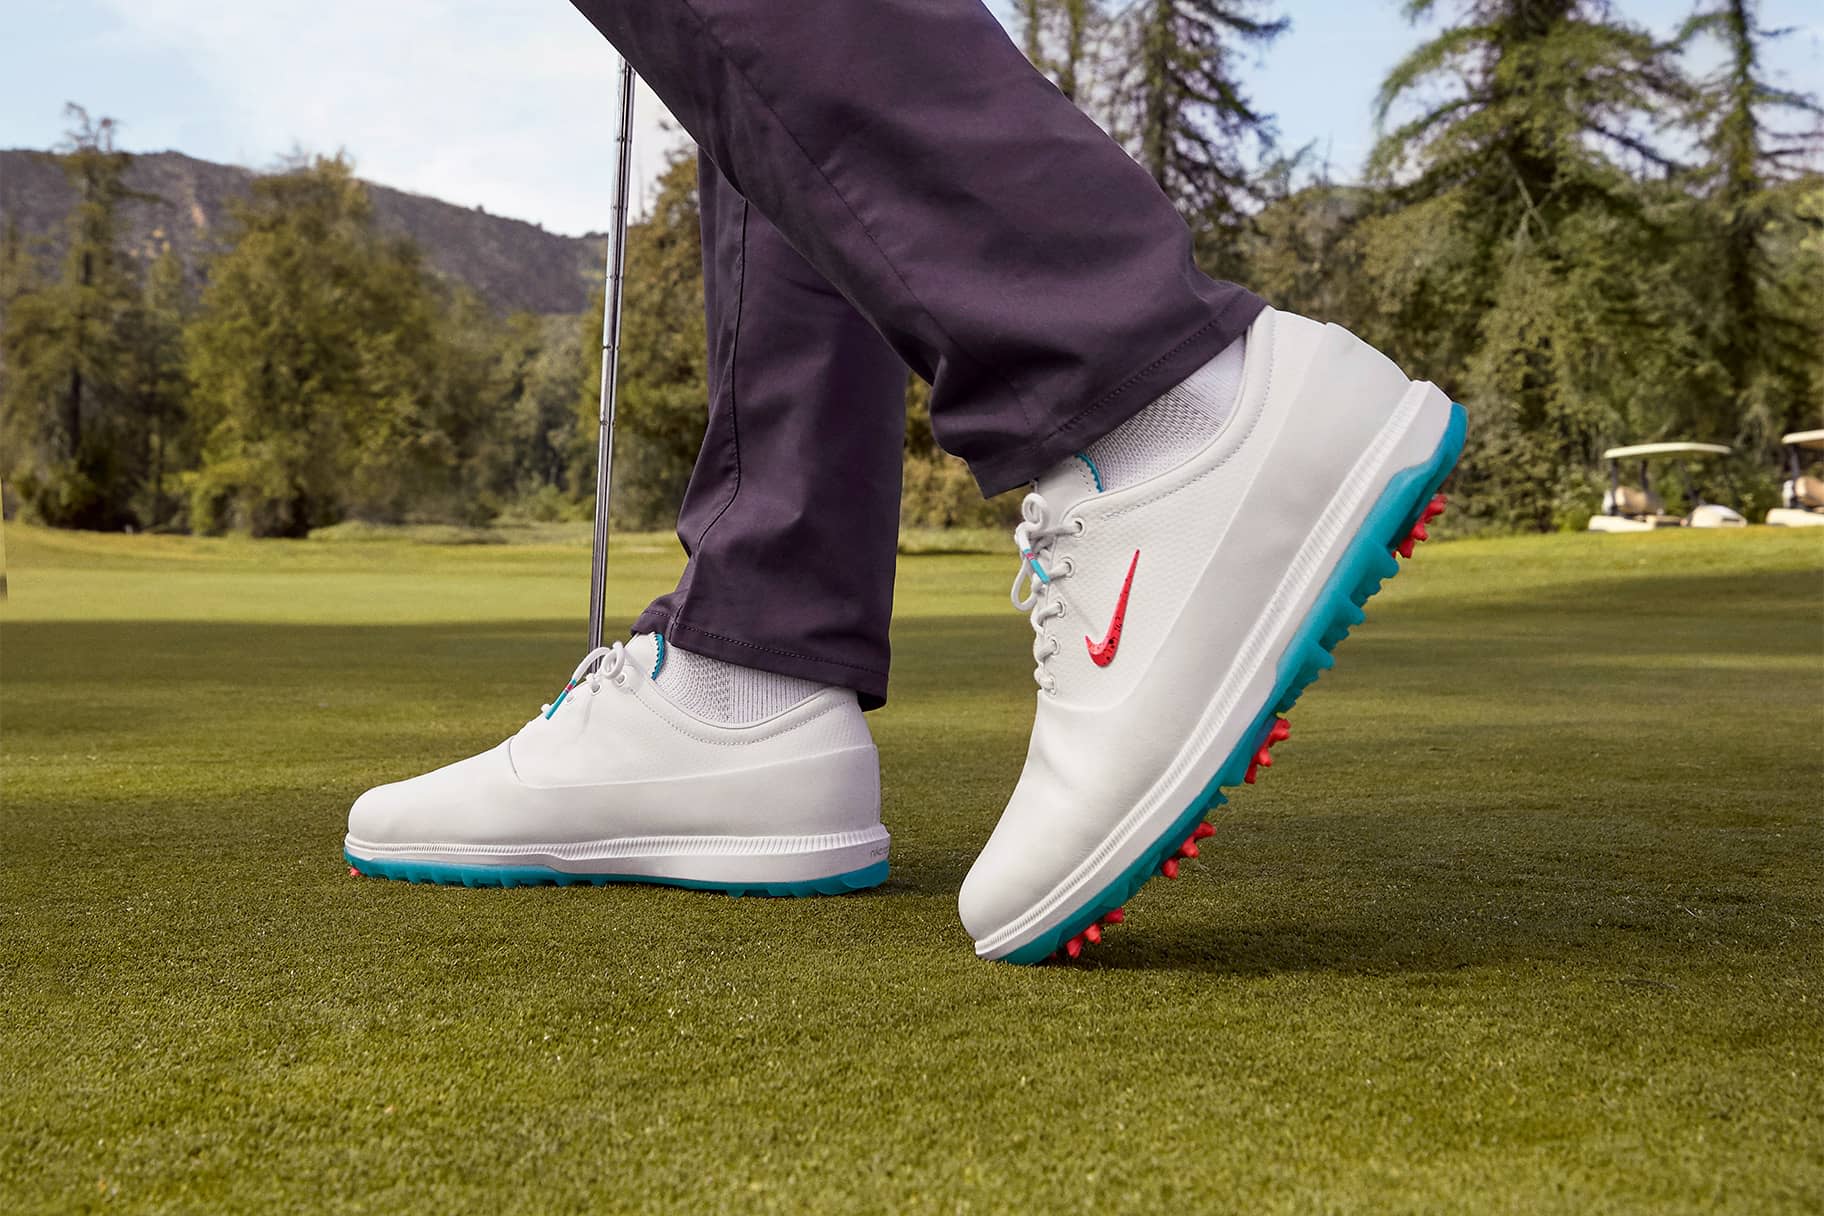 Die besten Nike Golfschuhe für mehr Traktion, Stabilität und Tragekomfort